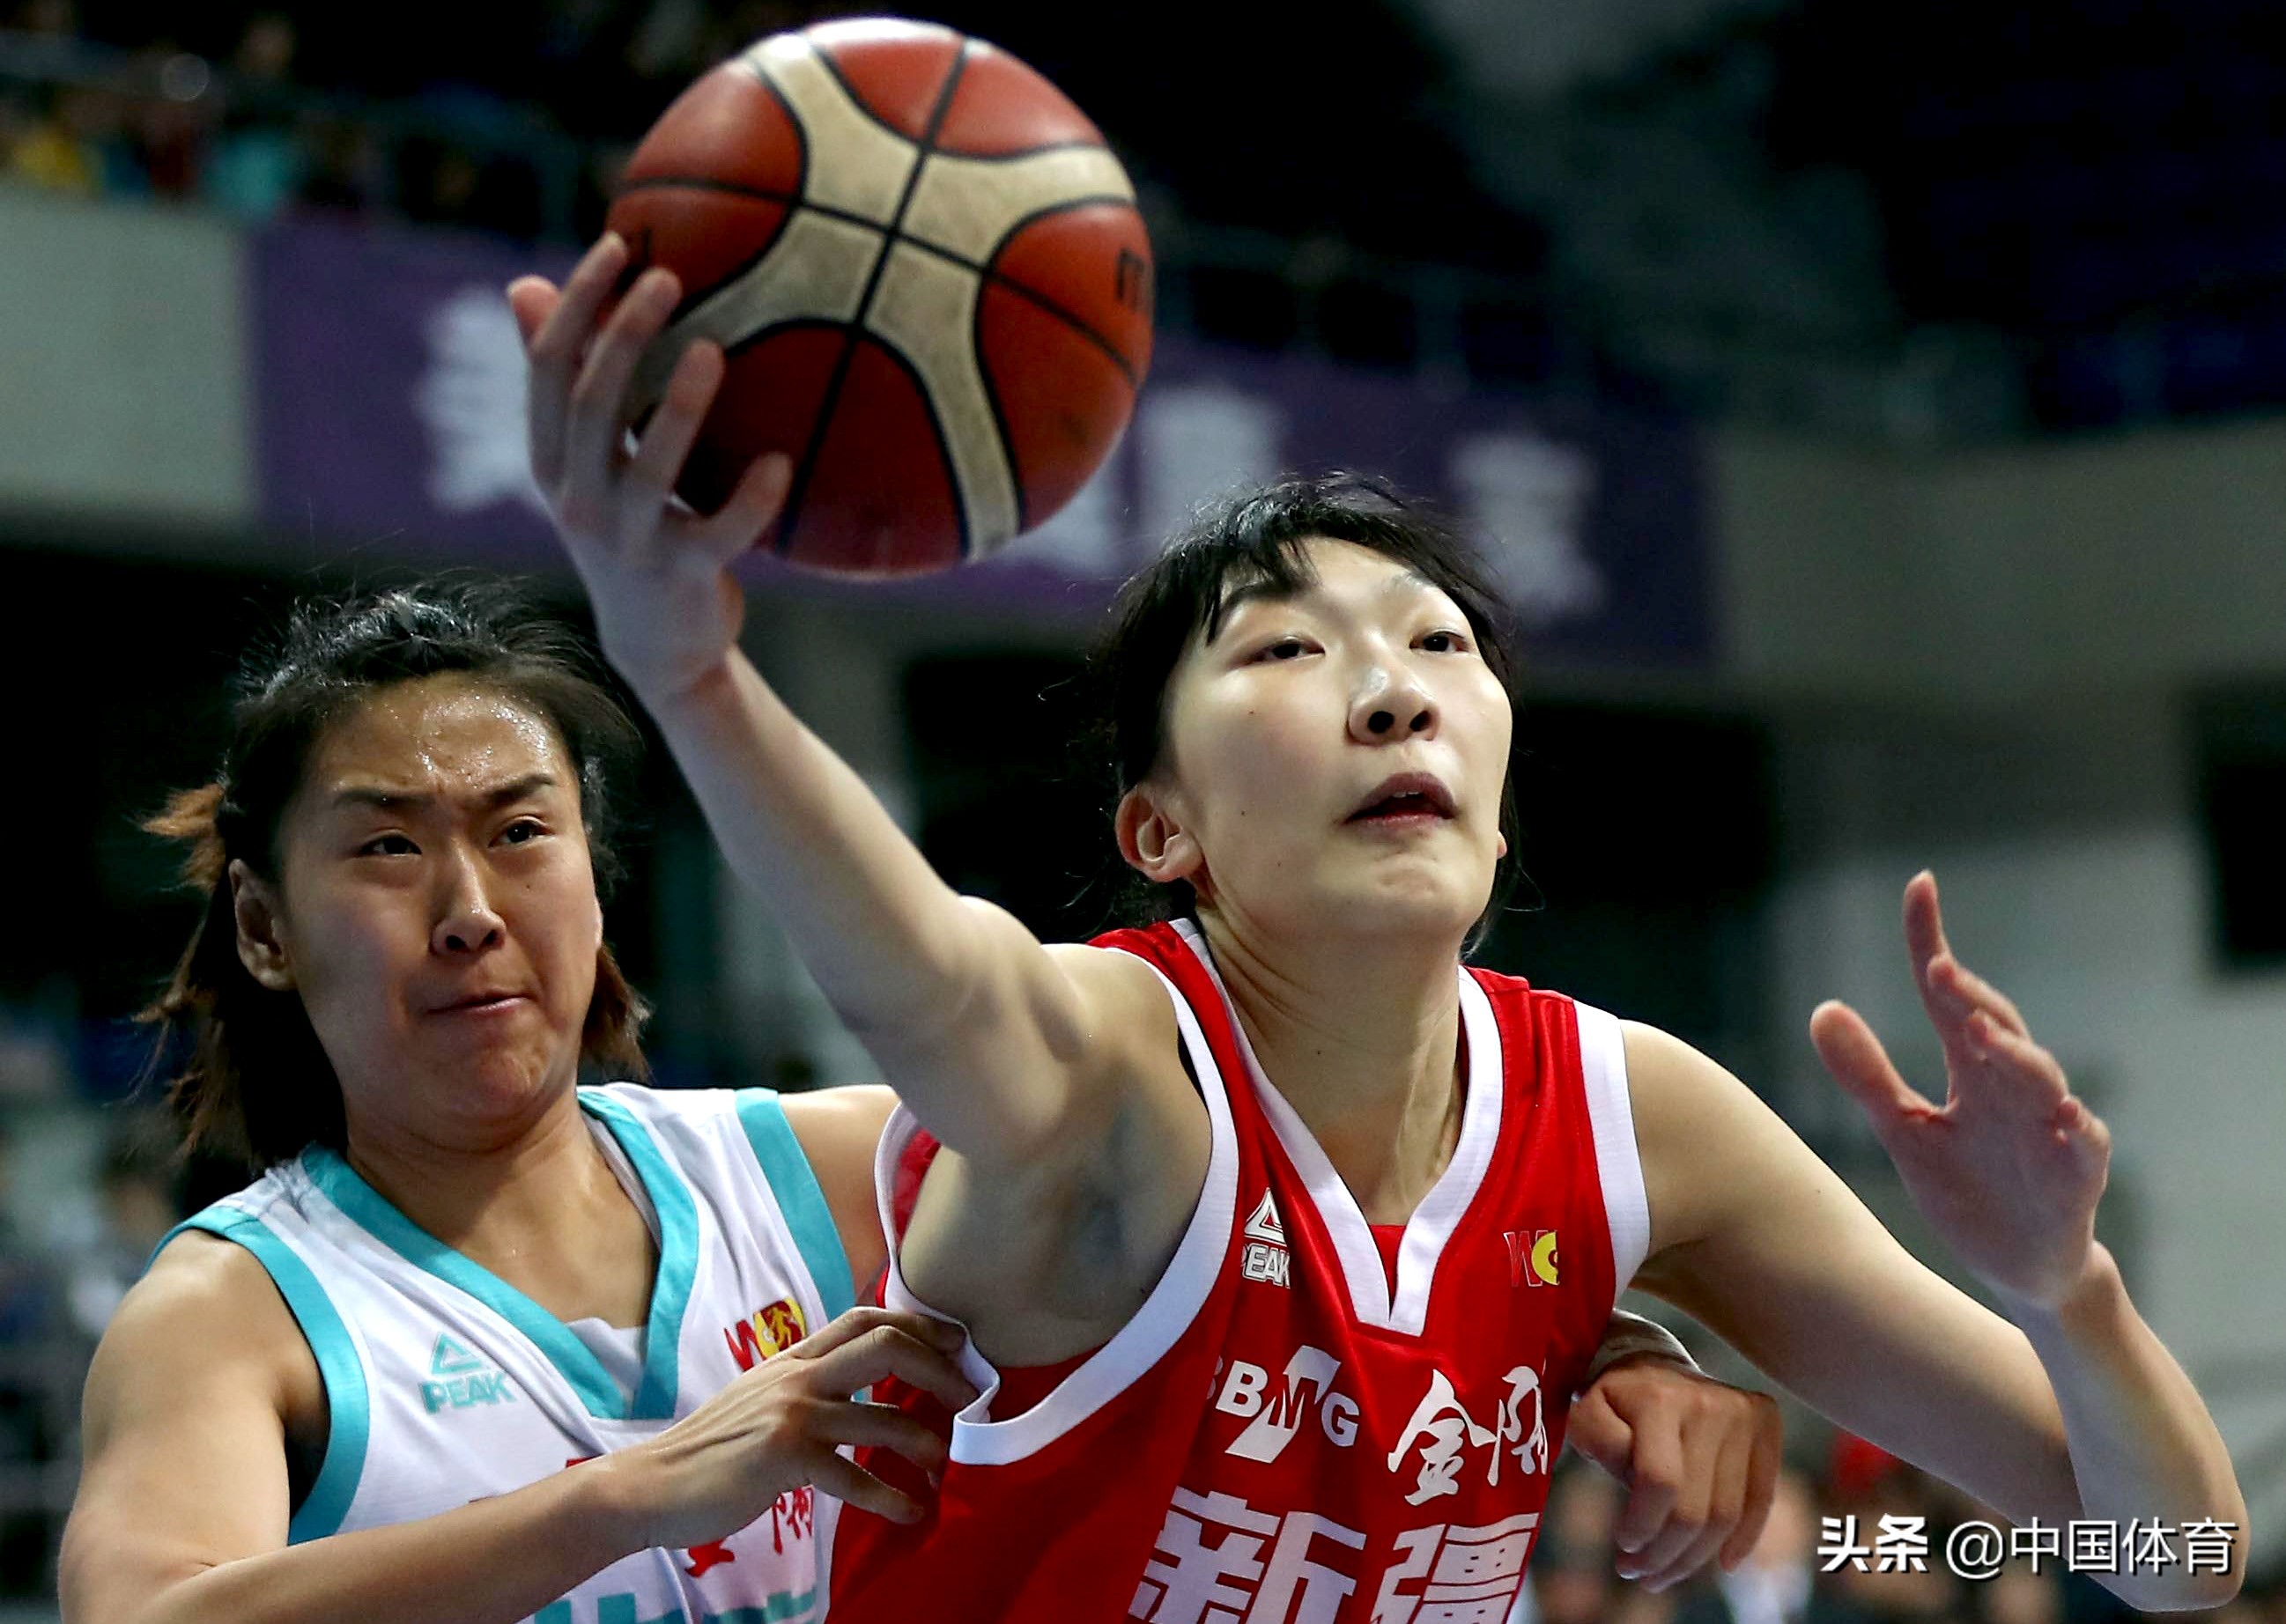 中国女篮队员韩旭通过wnba选秀 进入纽约自由人队